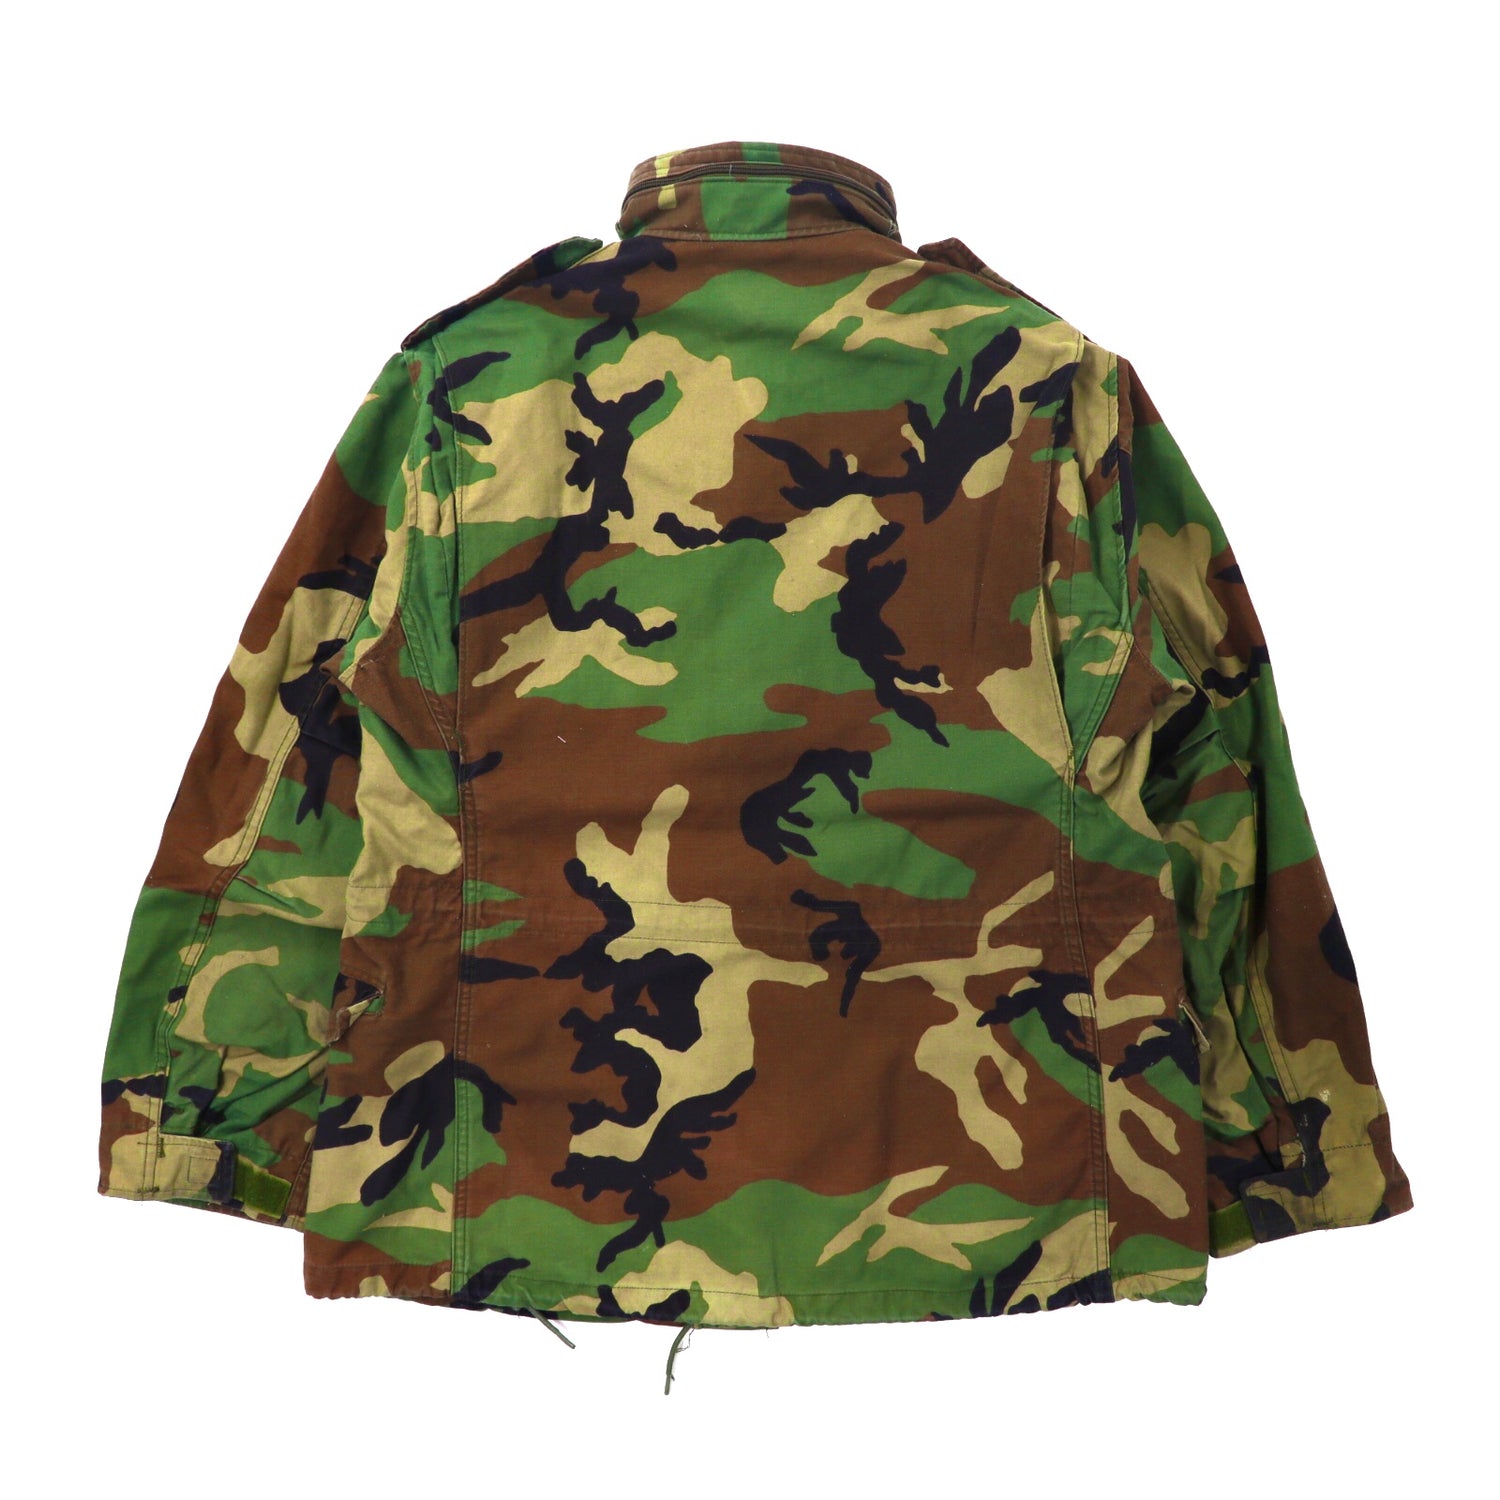 US ARMY Field Jacket M Khaki camouflage Pattern 8415-01-099-7835 